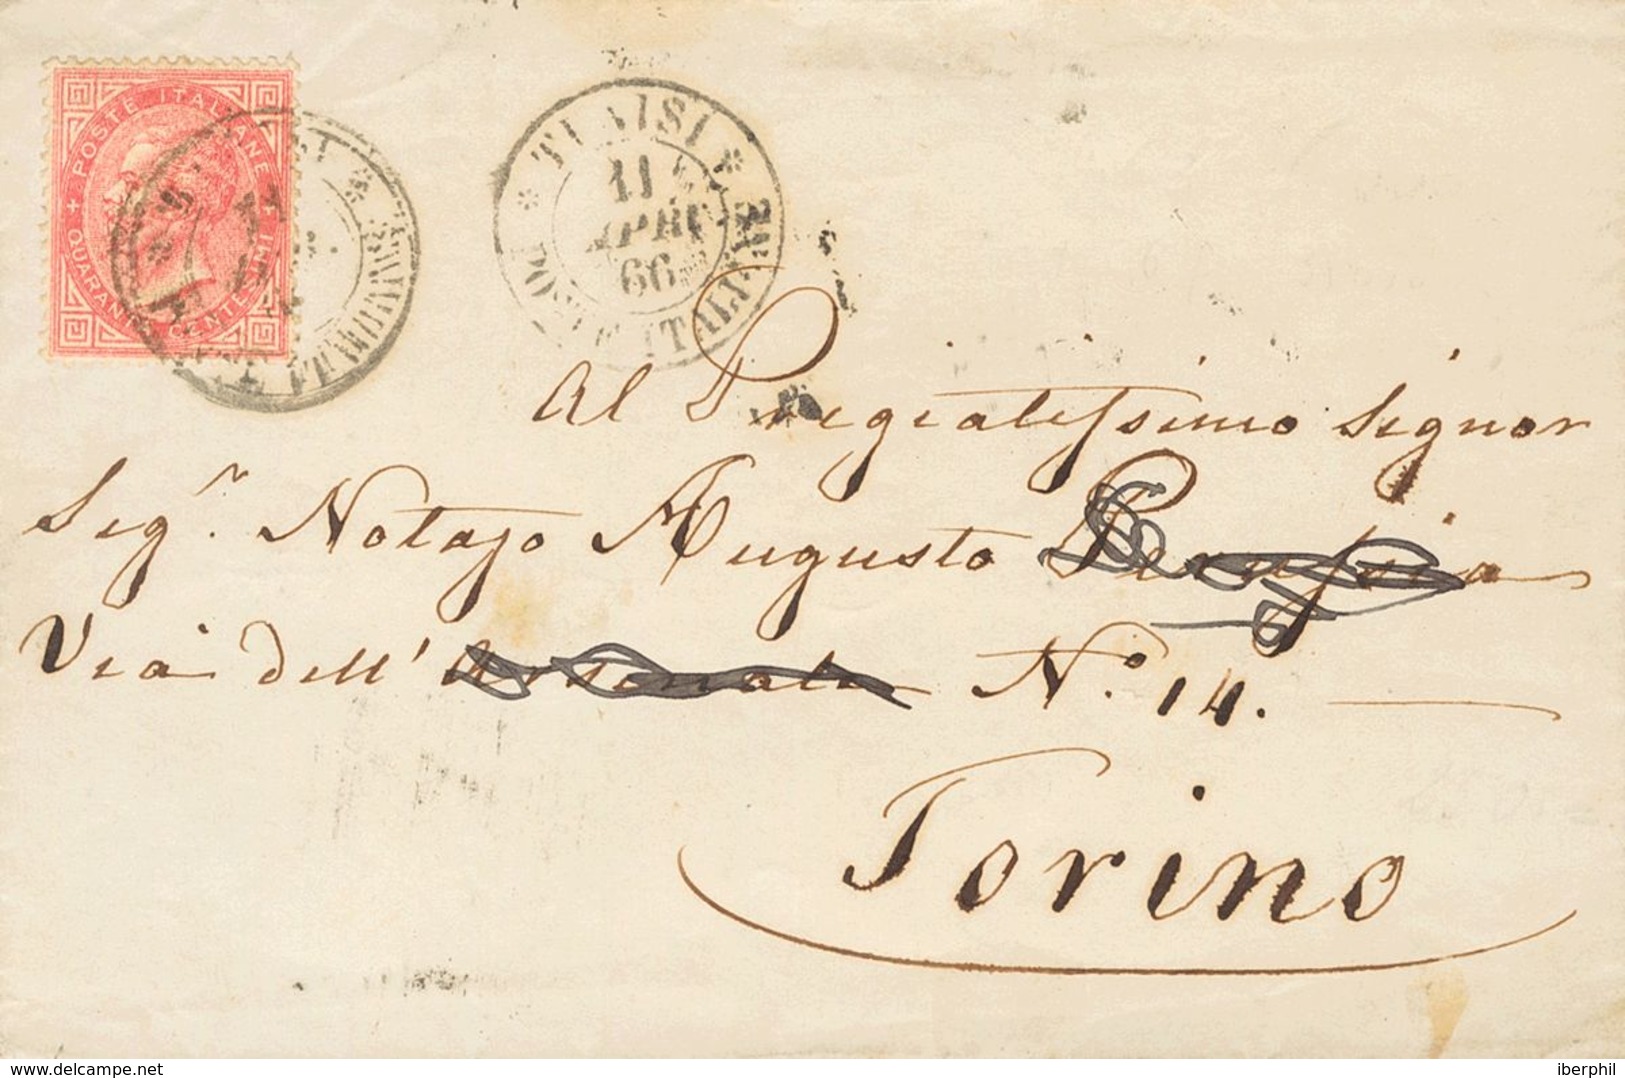 Tunisia, Italian Post Offices. COVERYv Italia 19. 1866. 40 Cts Pink (London Shot). TUNIS To TURIN. Postmark TUNISIE / PO - Tunisia